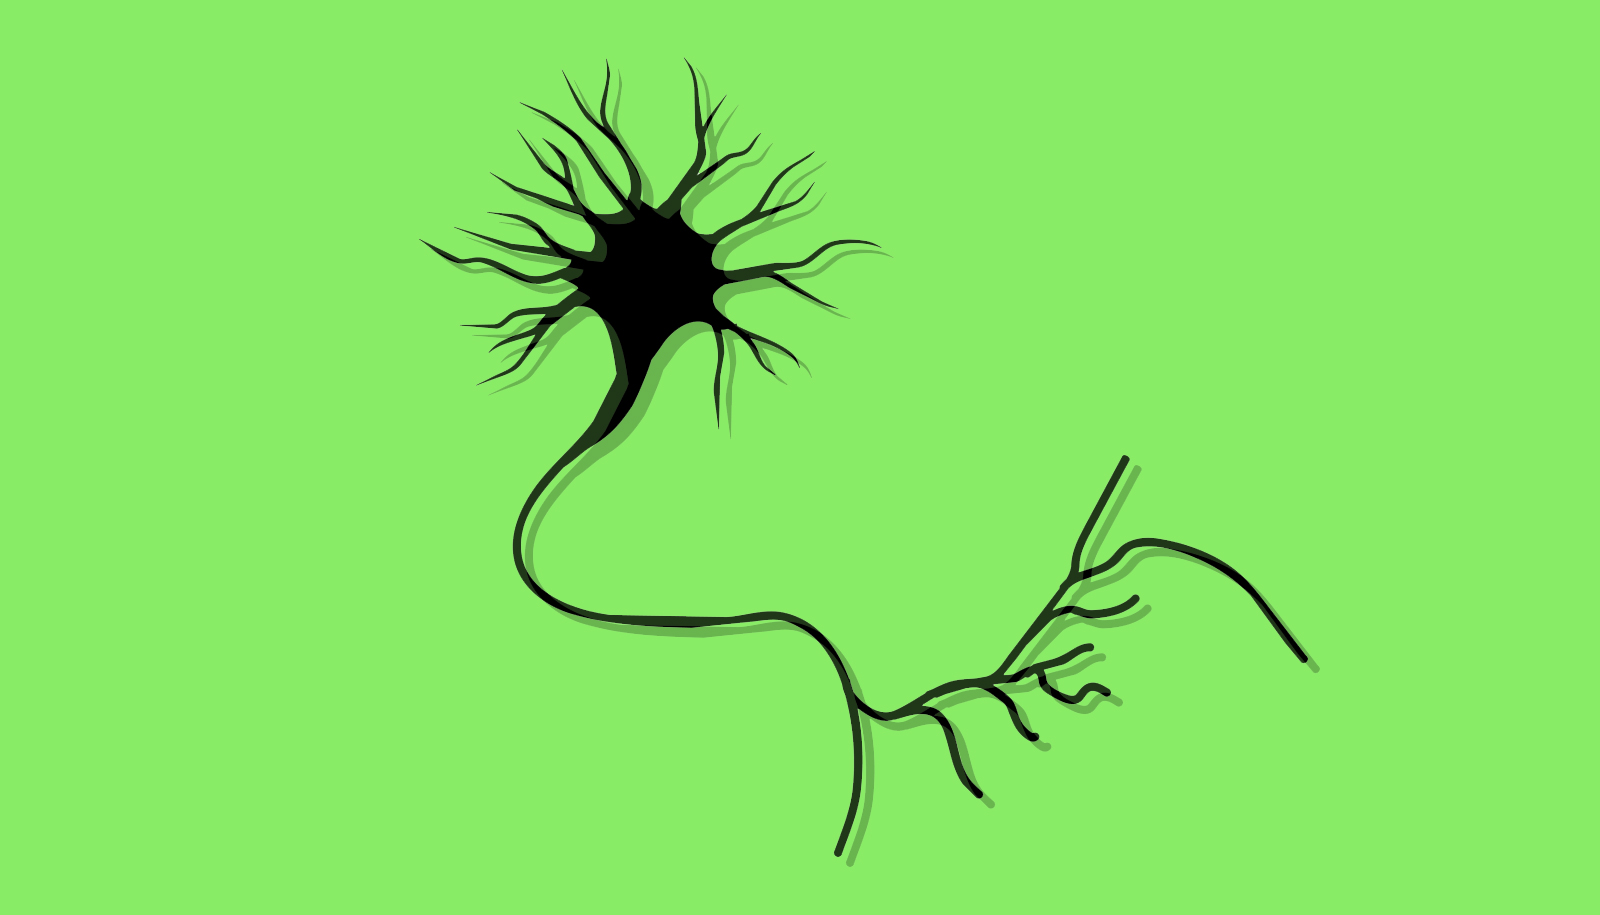 green_neuron_1600-1400x400-1